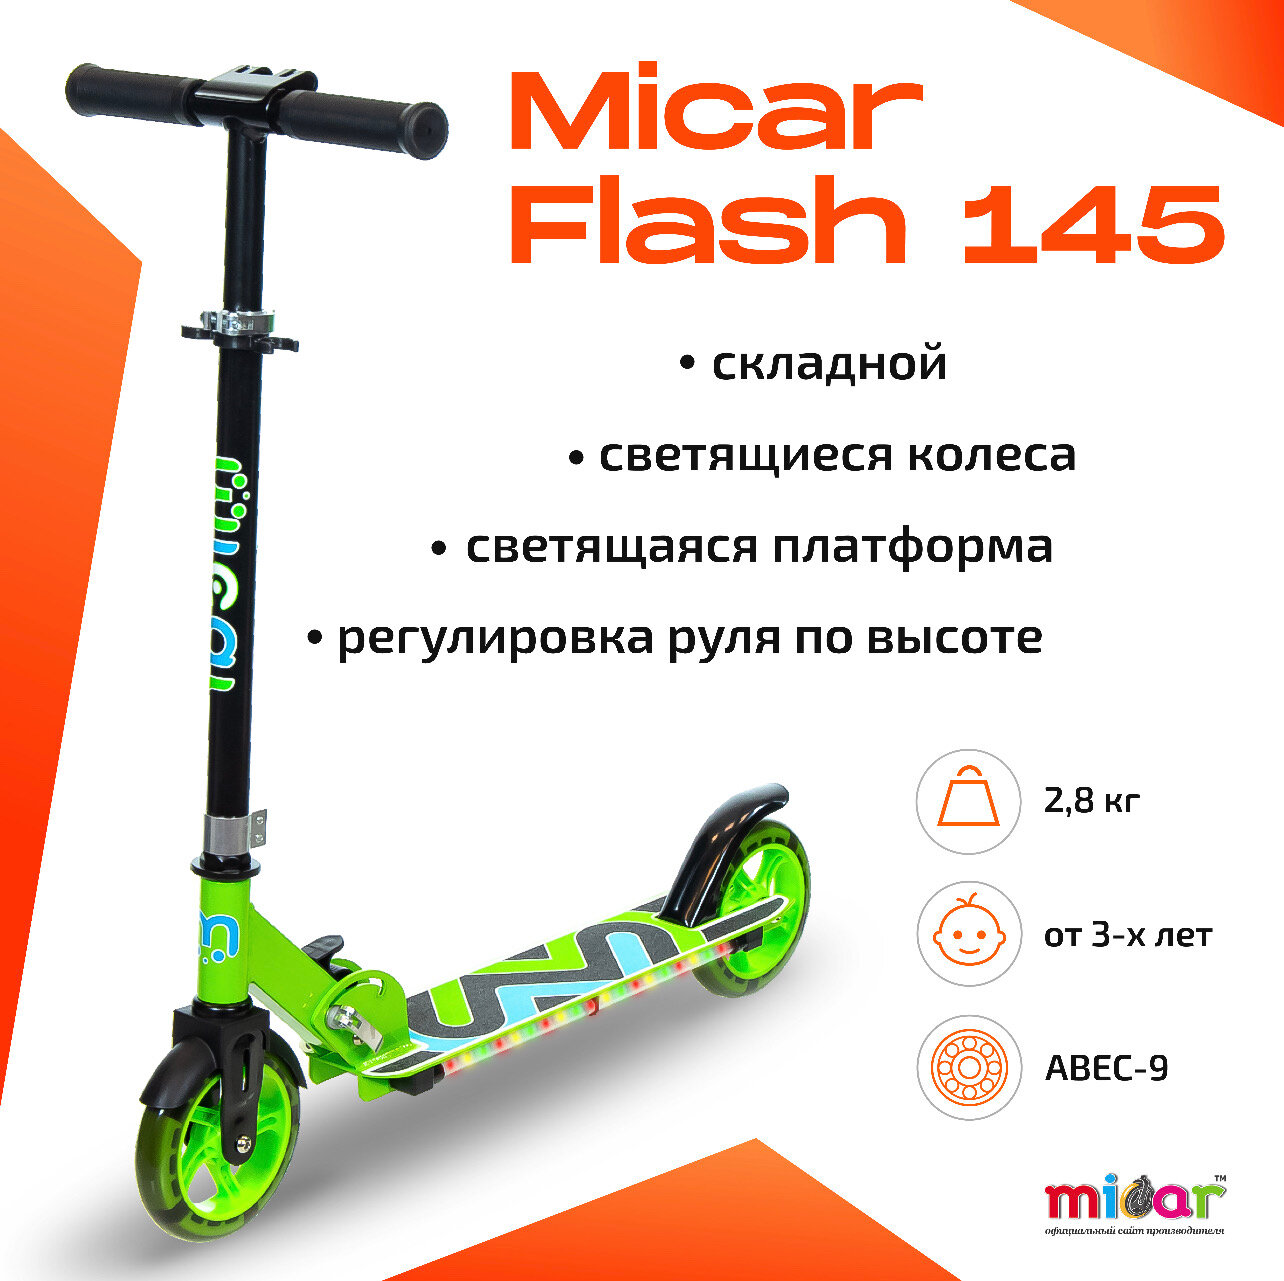 Детский двухколёсный самокат со светящимися колёсами и платформой Micar Flash 145 Зеленый